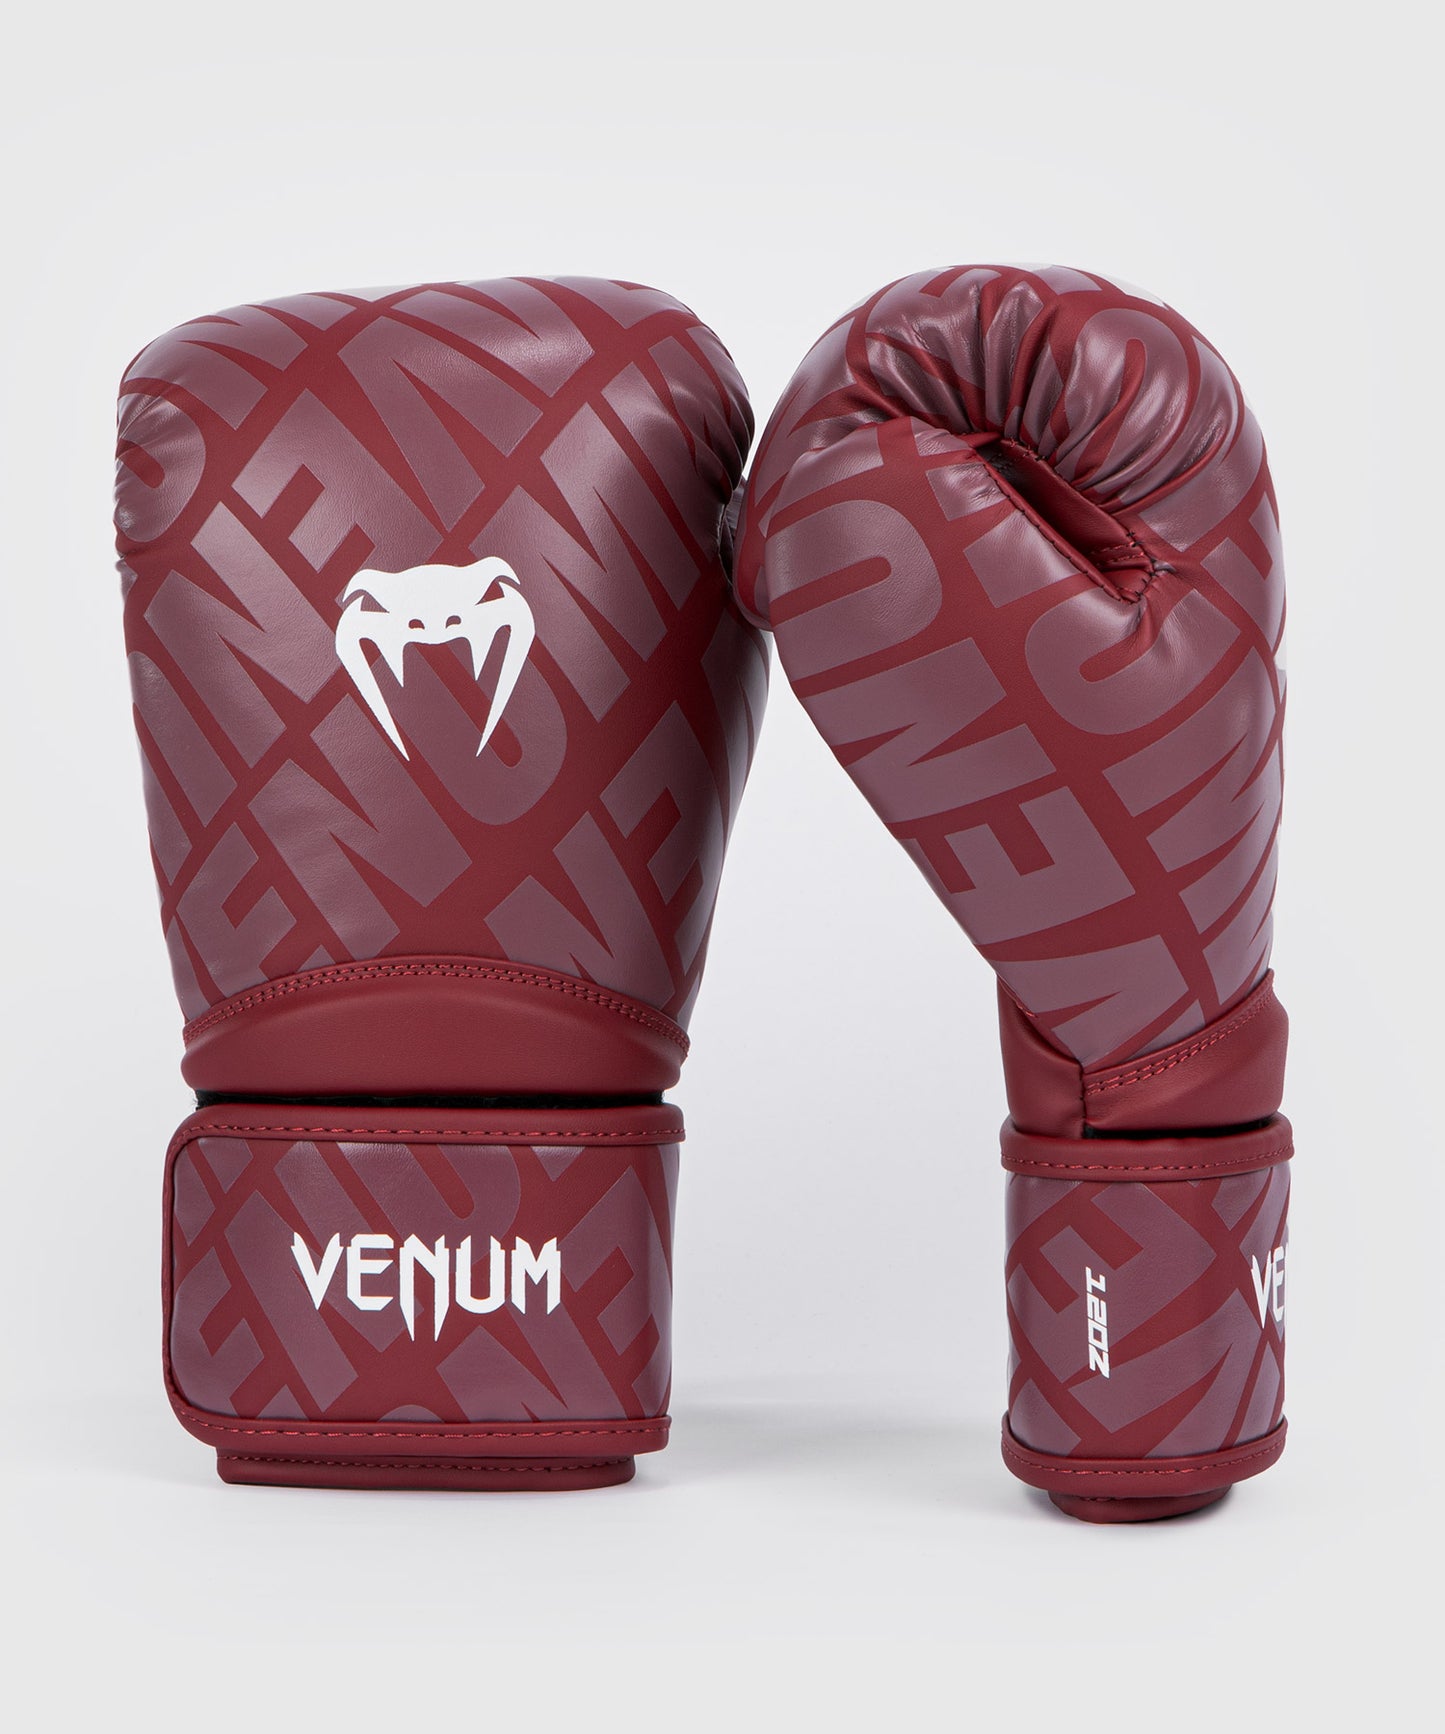 Venum Contender 1.5 XT Boxing Gloves Burgundy/White